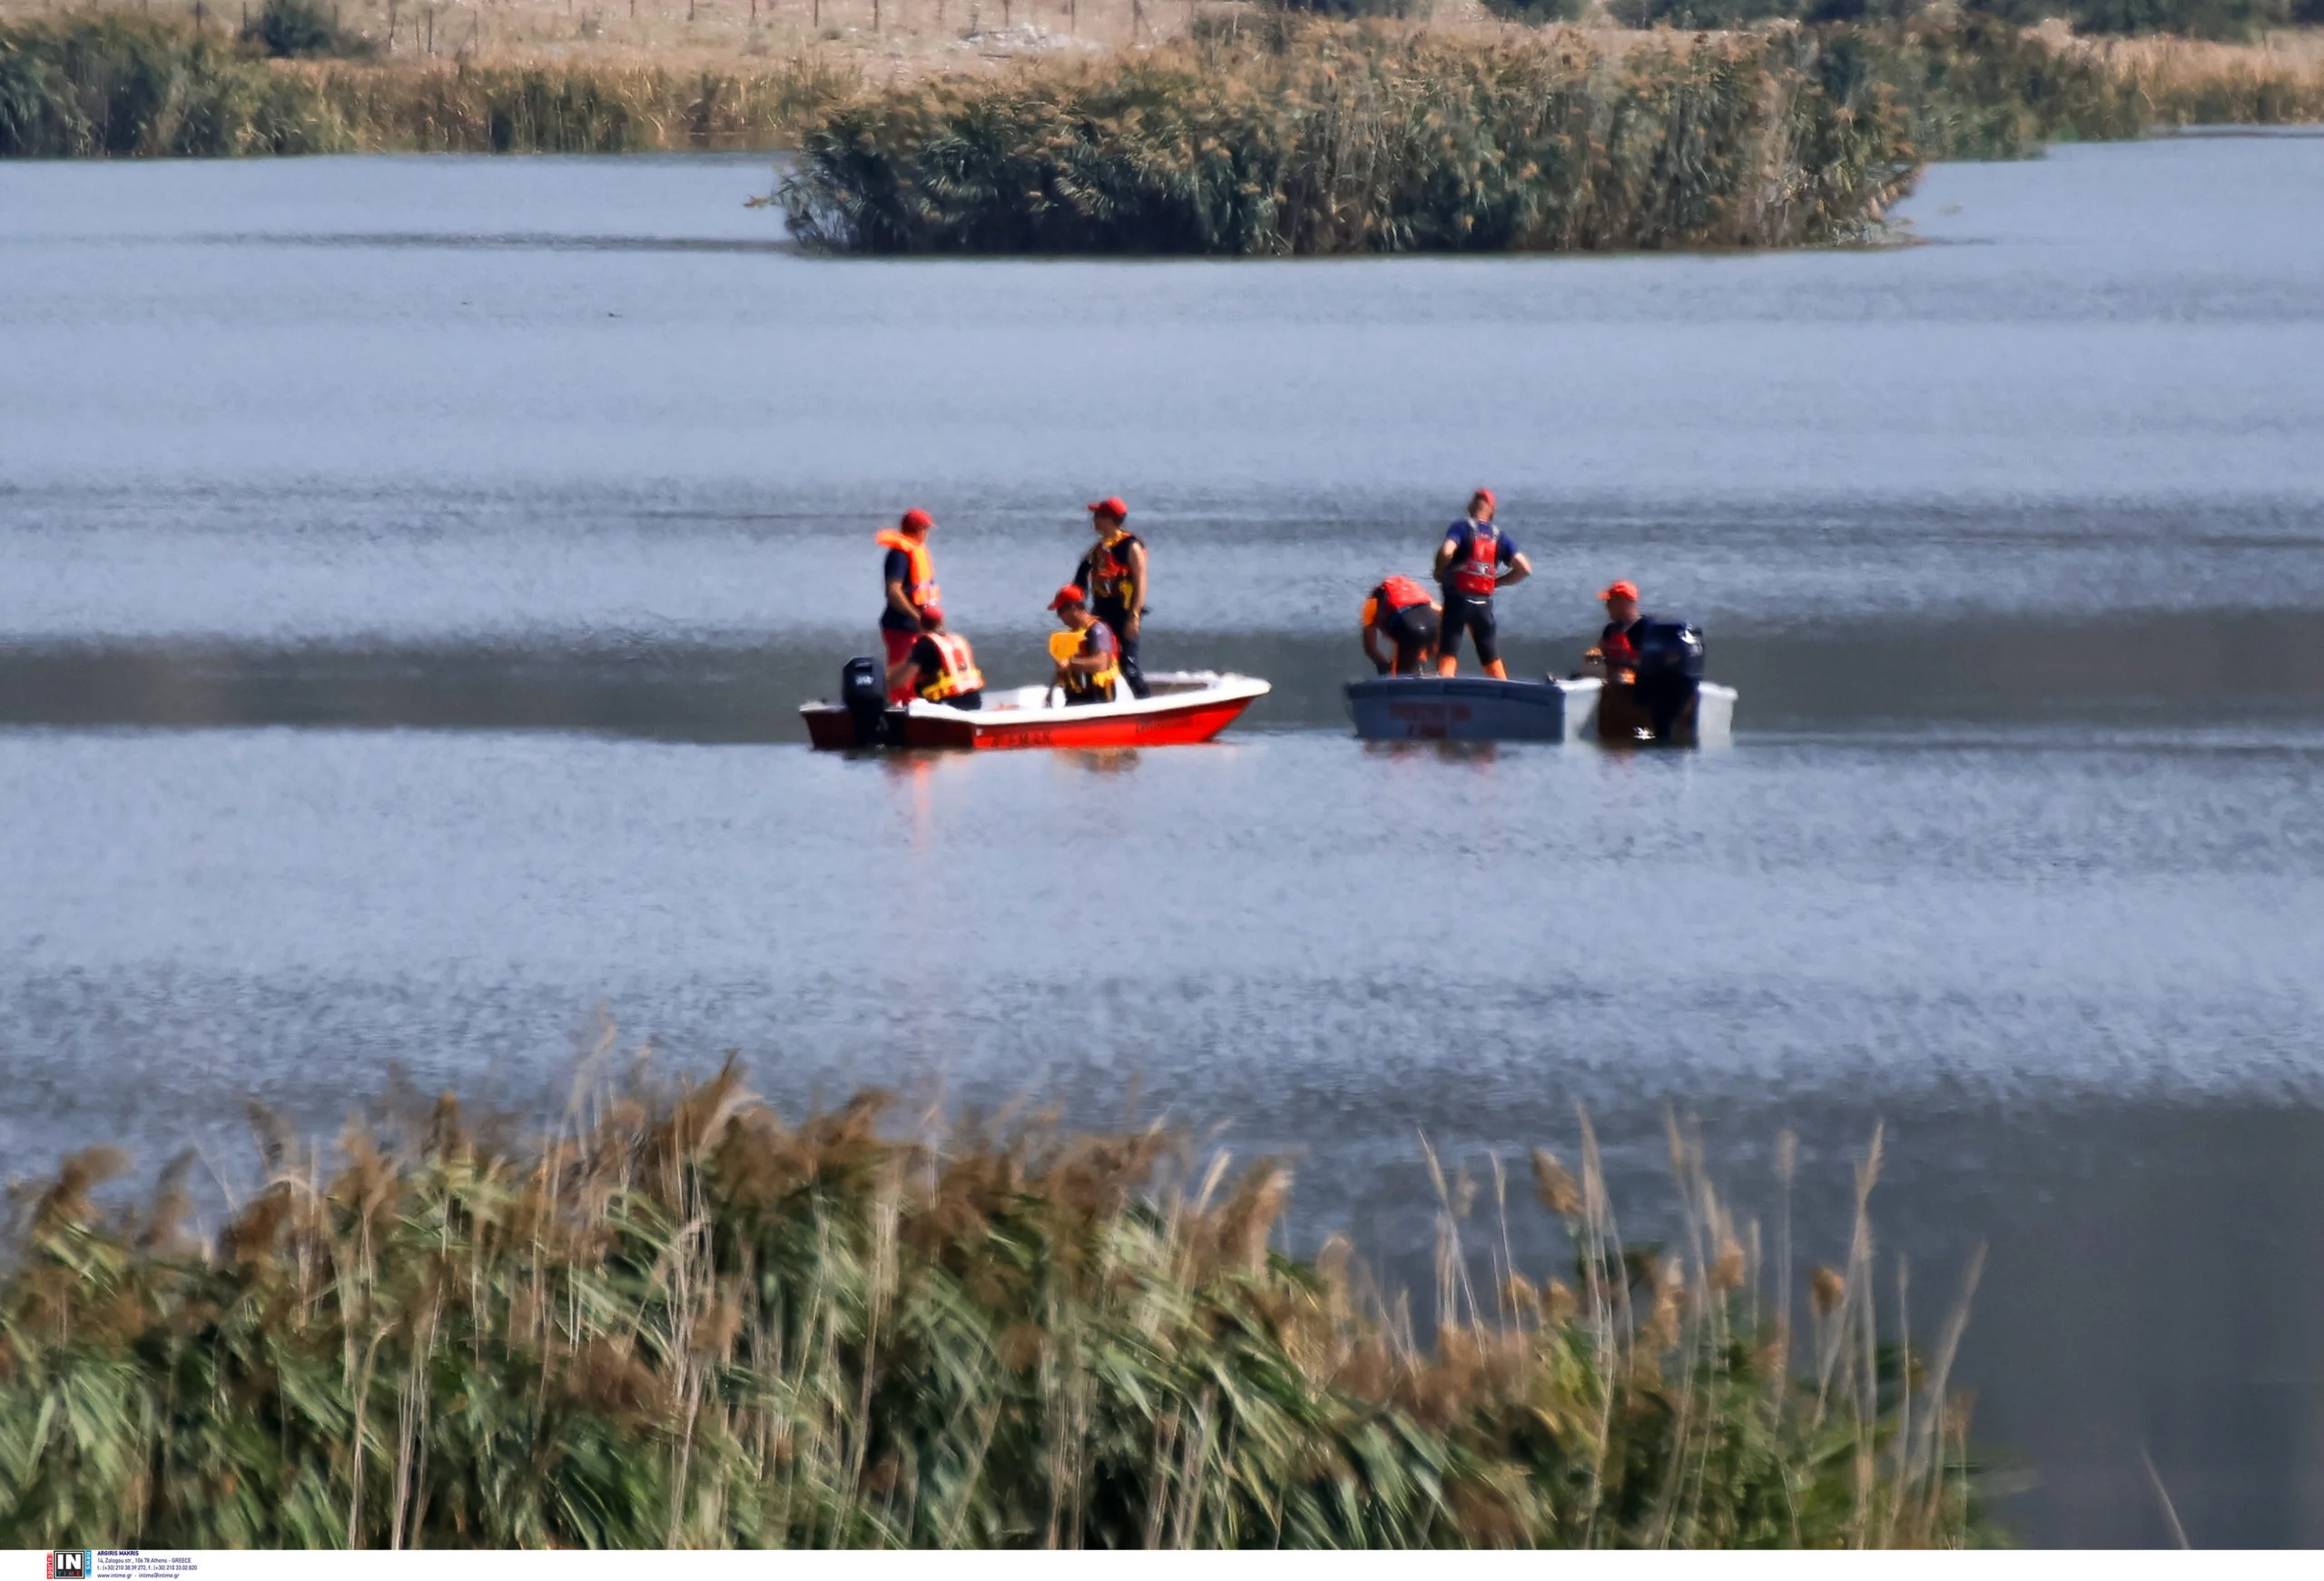 Λίμνη Κάρλα: Ξέσπασε η μητέρα του 43χρονου ψαρά που βρέθηκε νεκρός – «Τι κακό έπεσε Θεέ μου στο σπιτικό μας»